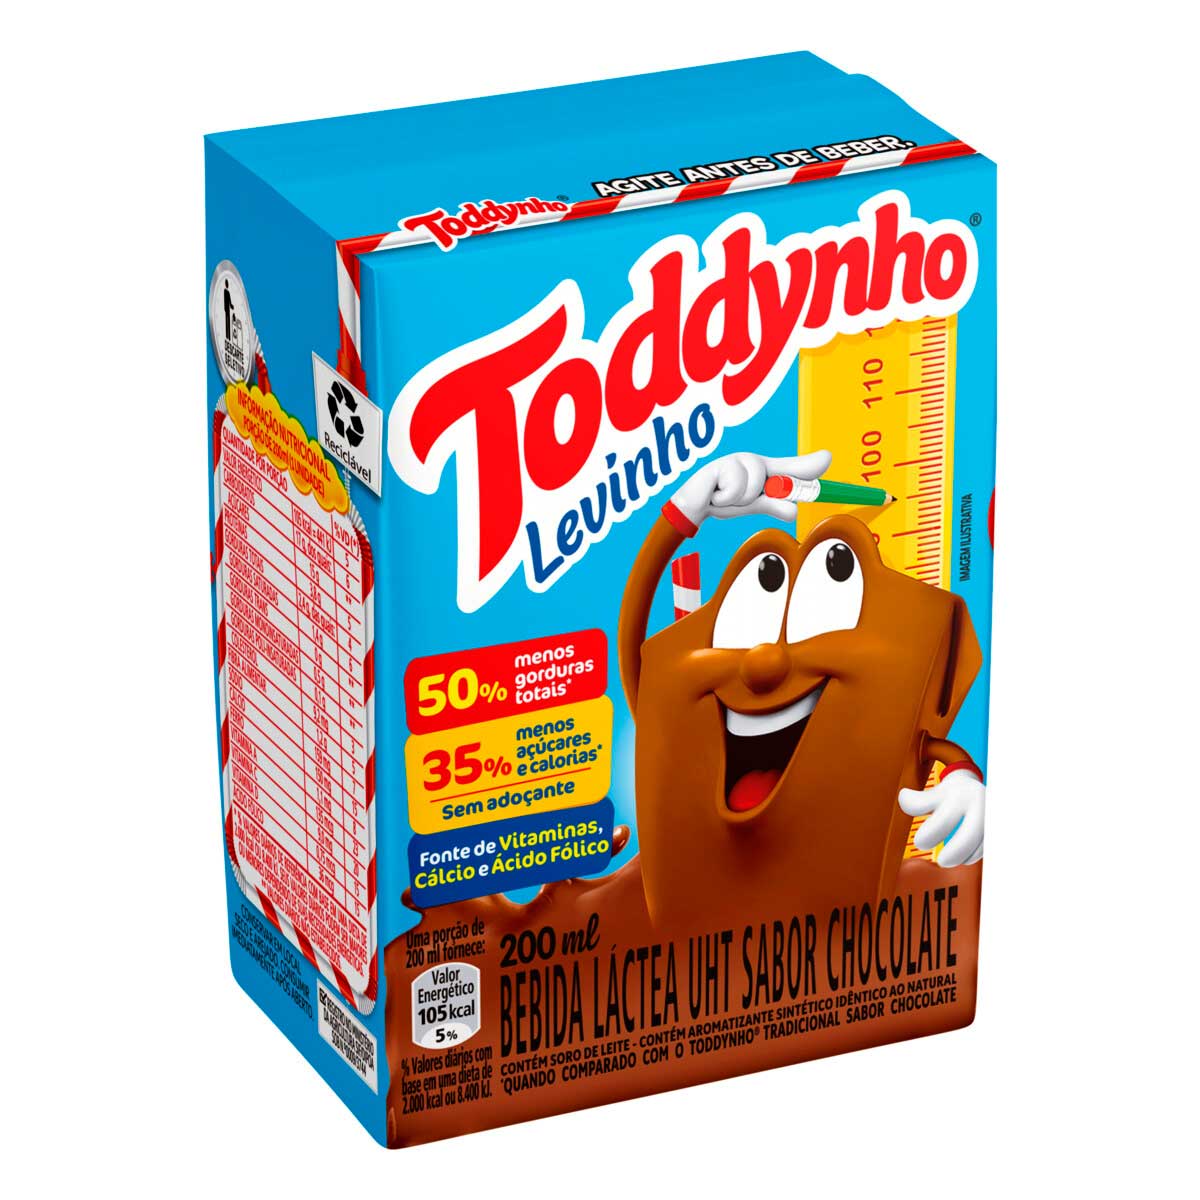 Toddynho Chocolate Drink 200ml